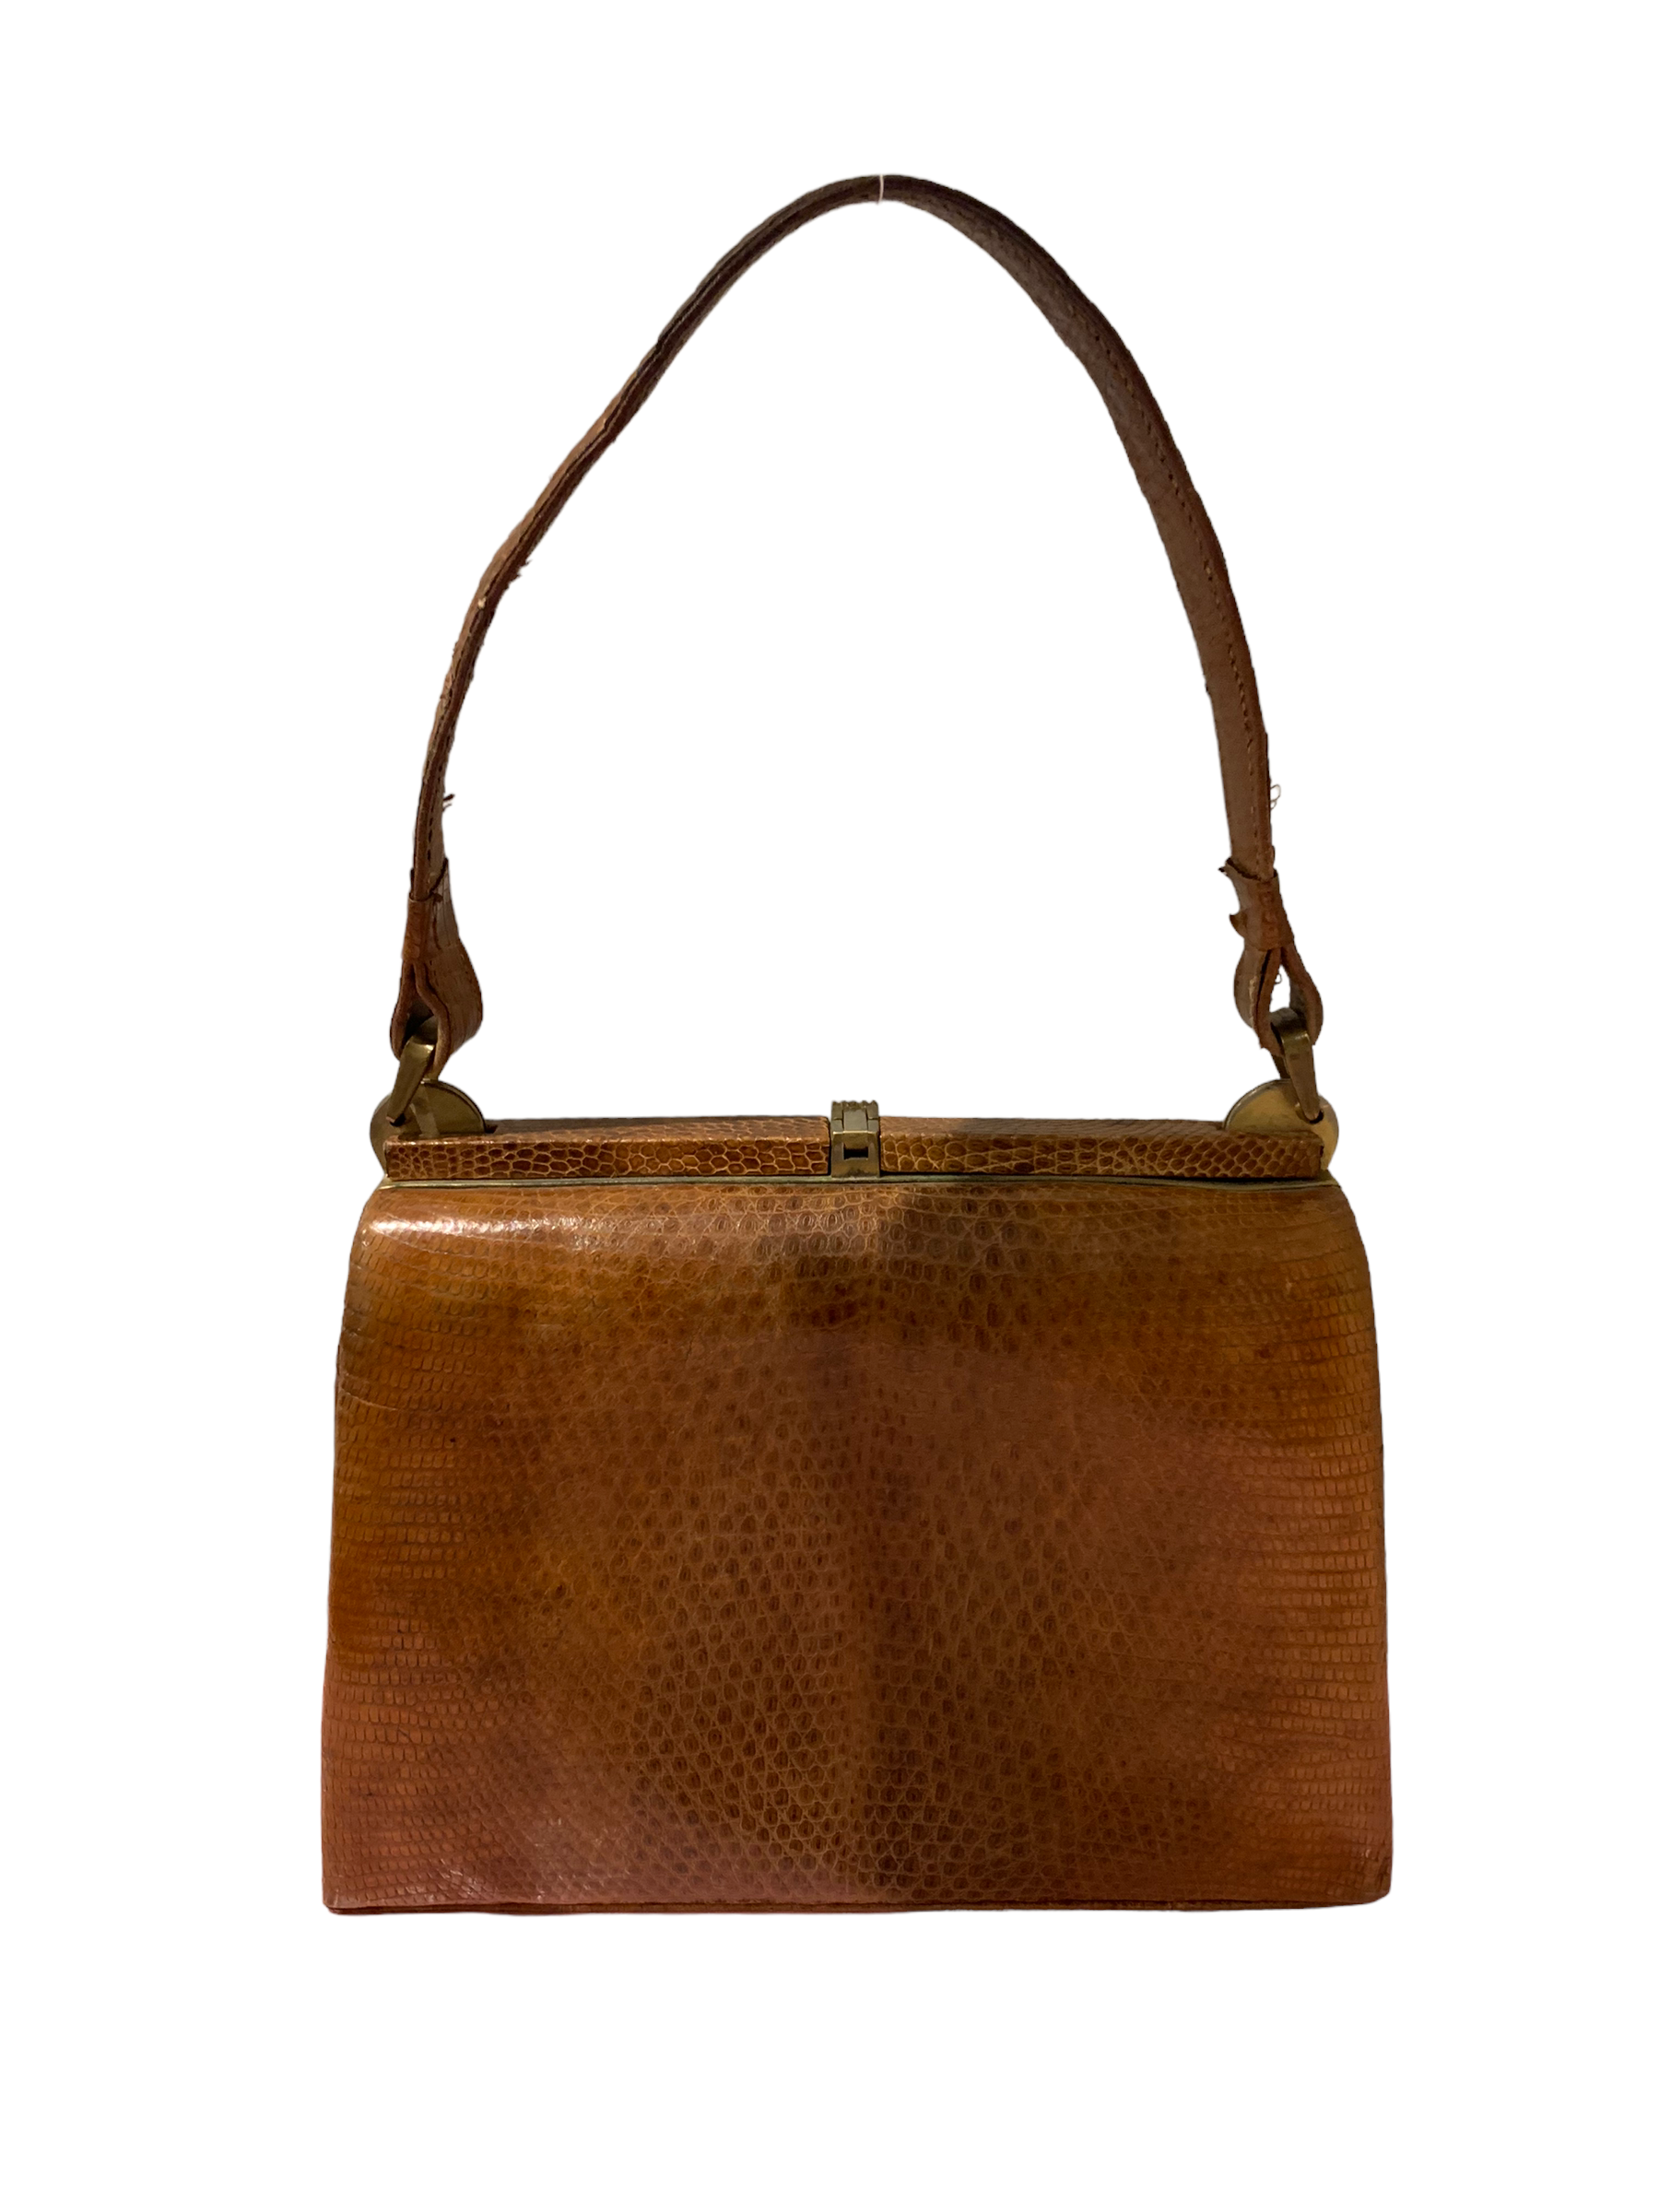 40s Vintage Leather Handbag